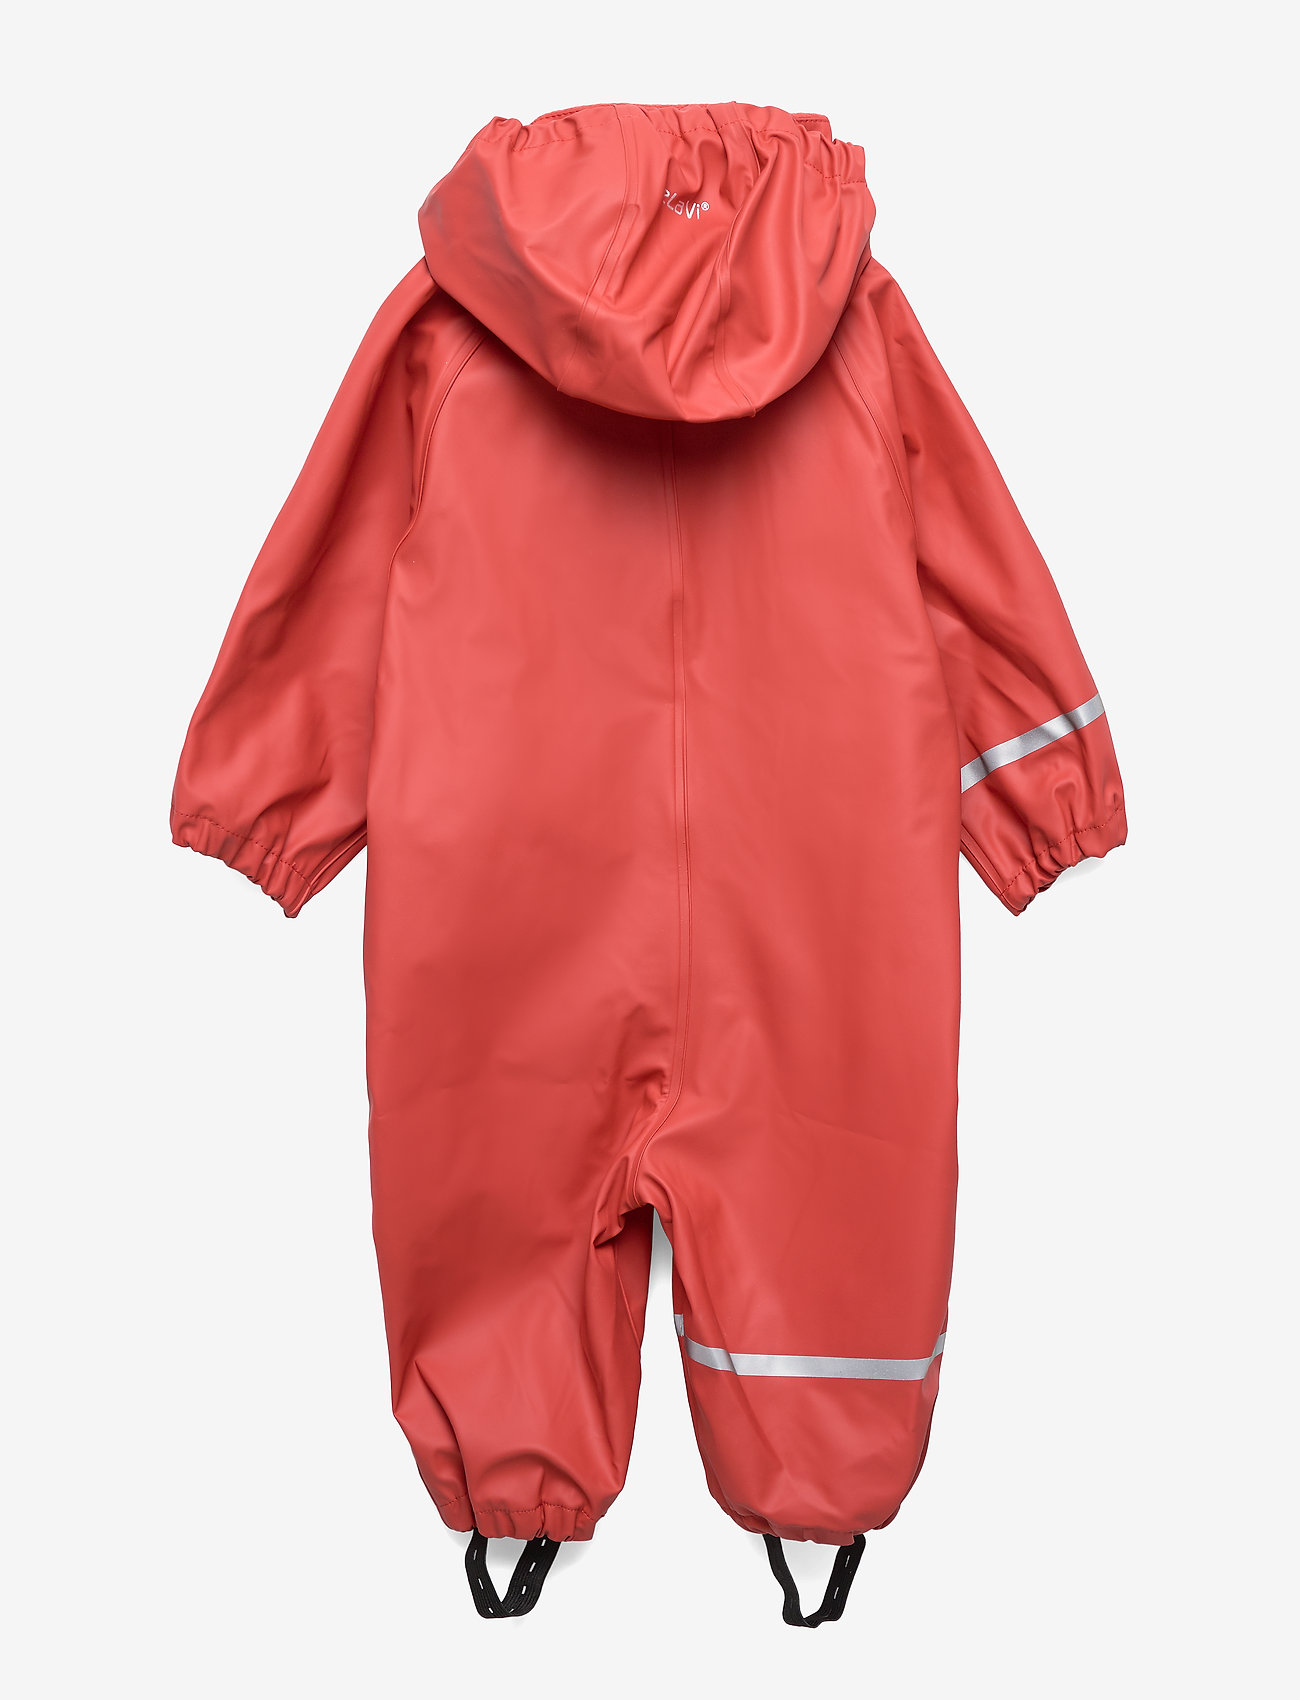 CeLaVi - Rainwear suit -Solid PU - lietus valkā kombinezoni - baked apple - 1